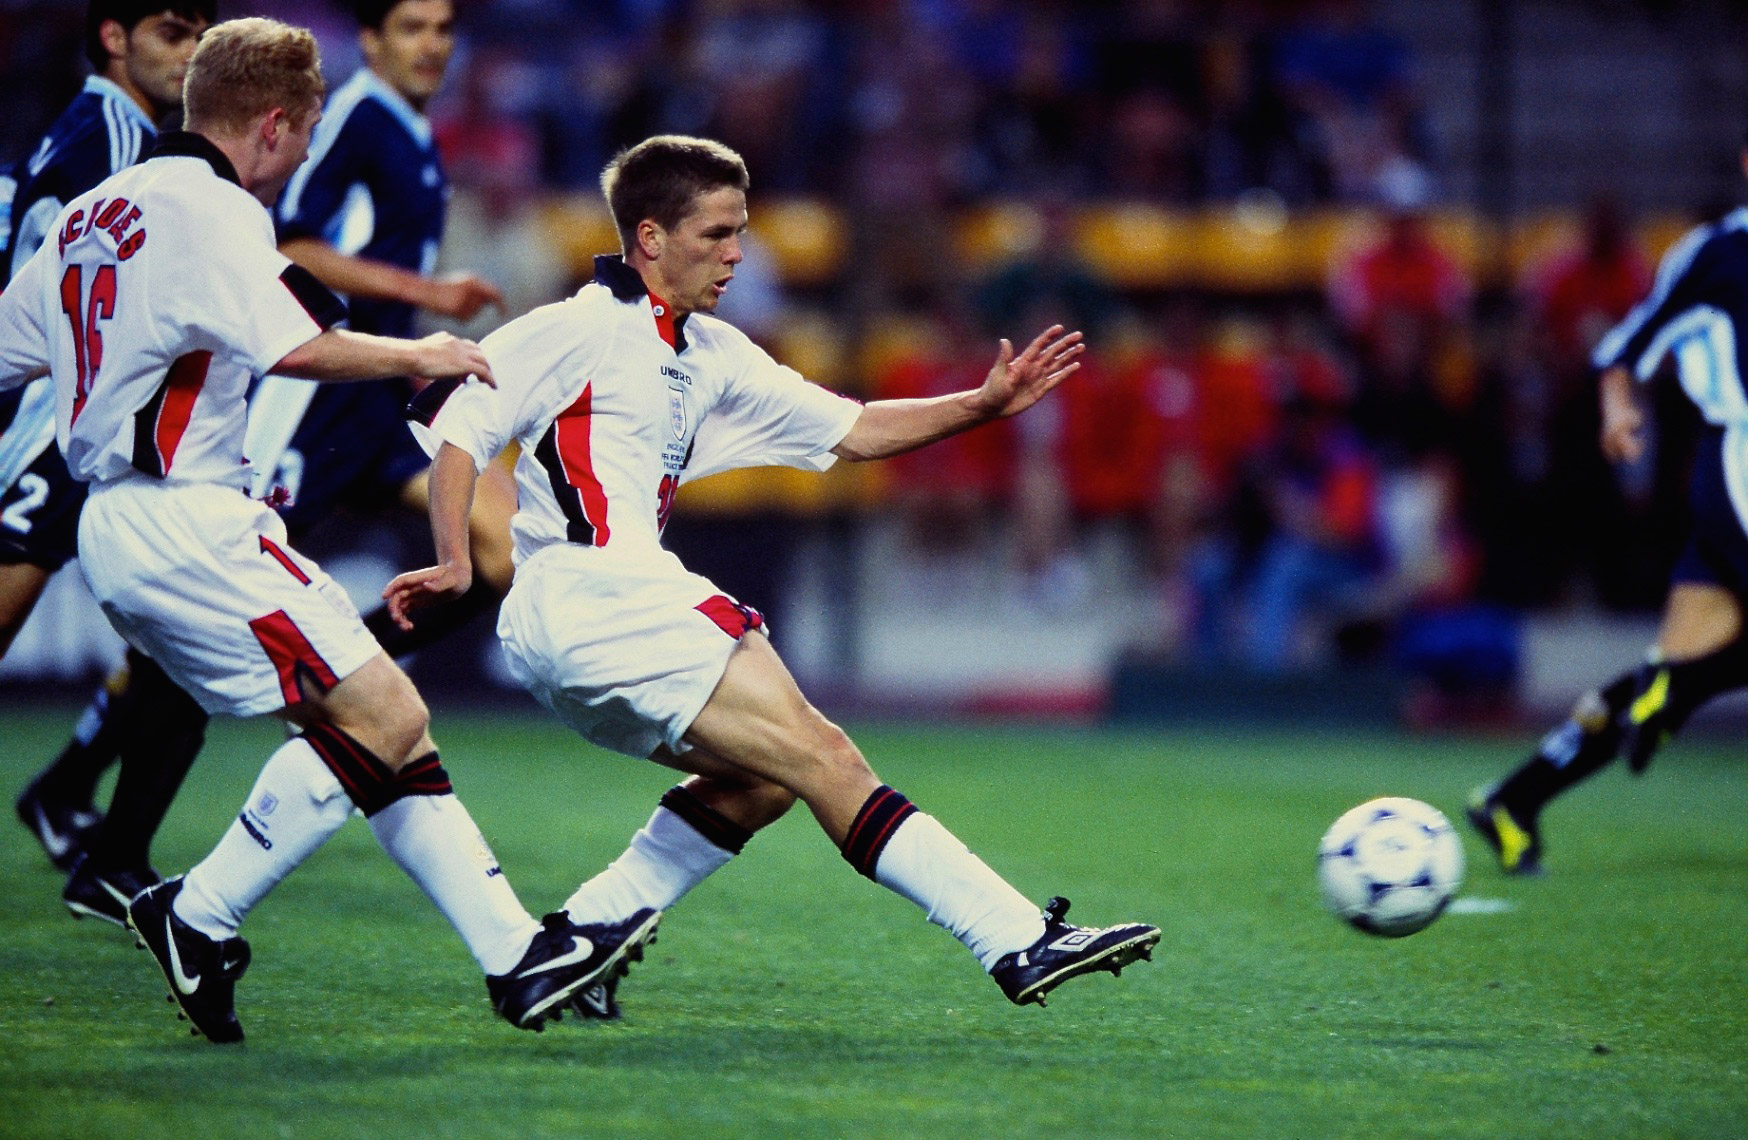 Michael Owen, England, Goal v. Argentina, St. Etienne, France